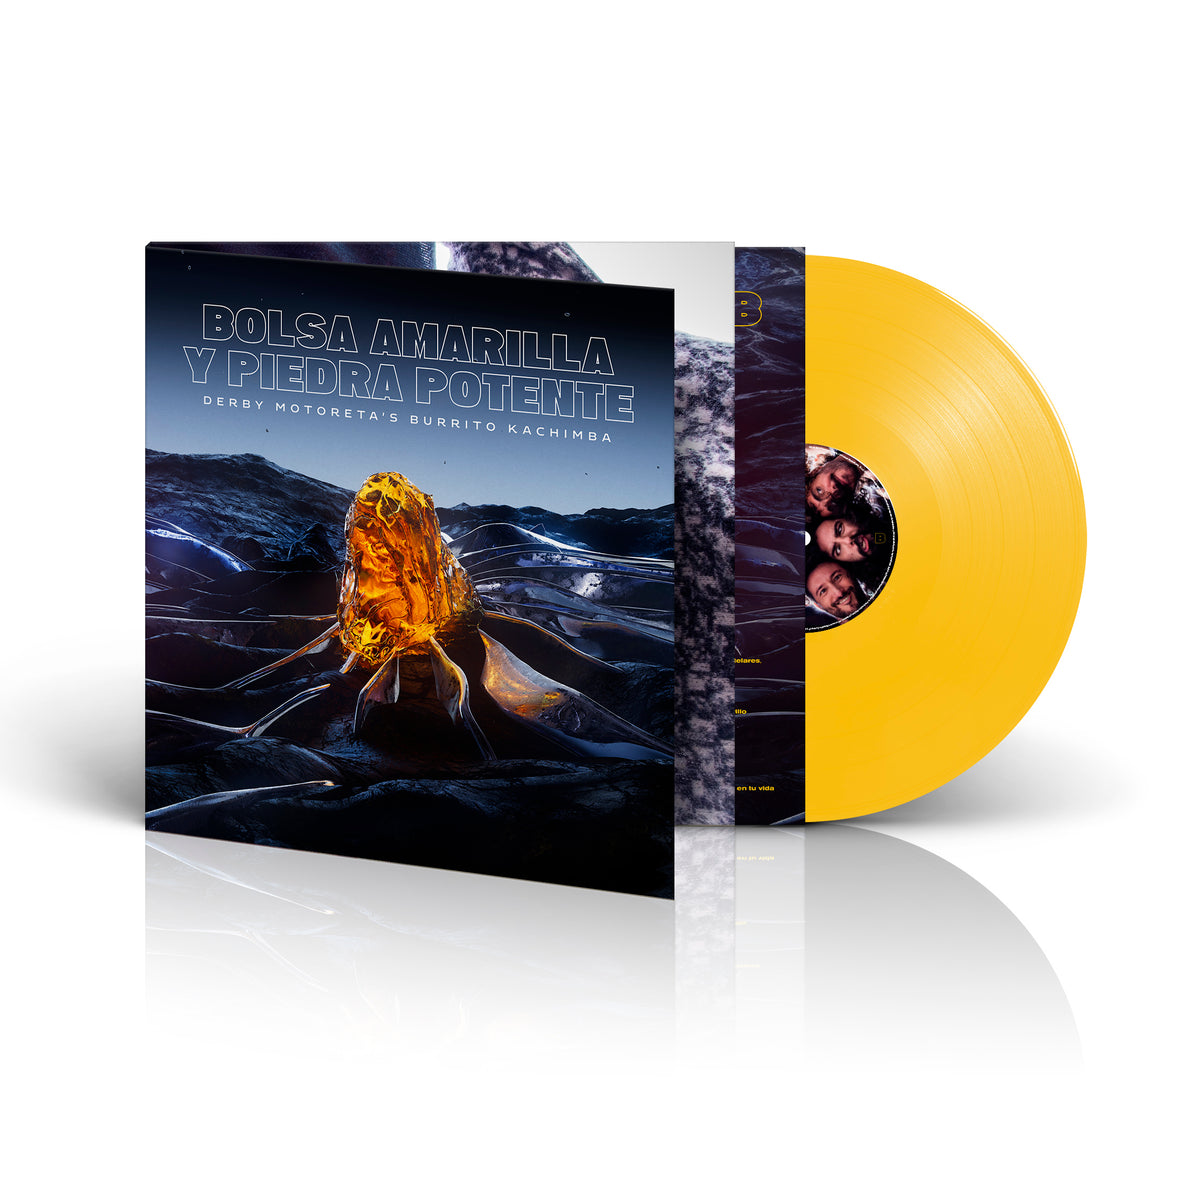 LP - Bolsa amarilla y piedra potente (Edición firmada)